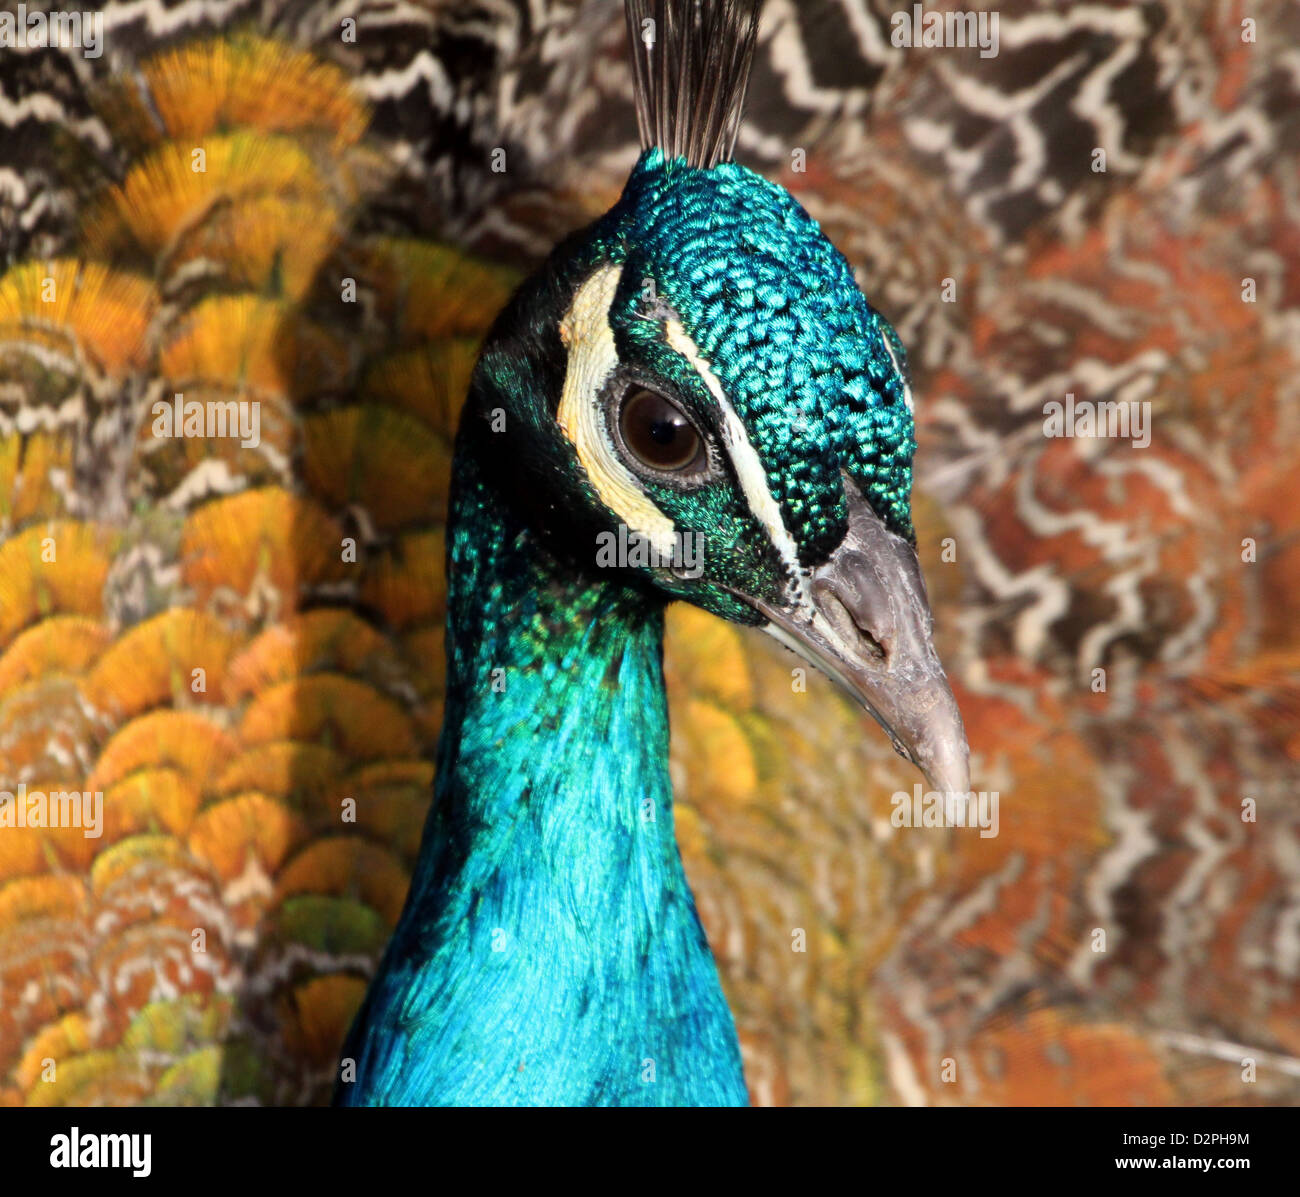 Cerca de la cabeza y la parte superior del cuerpo de Indian Peafowl - Peacock (Pavo cristatus) Foto de stock